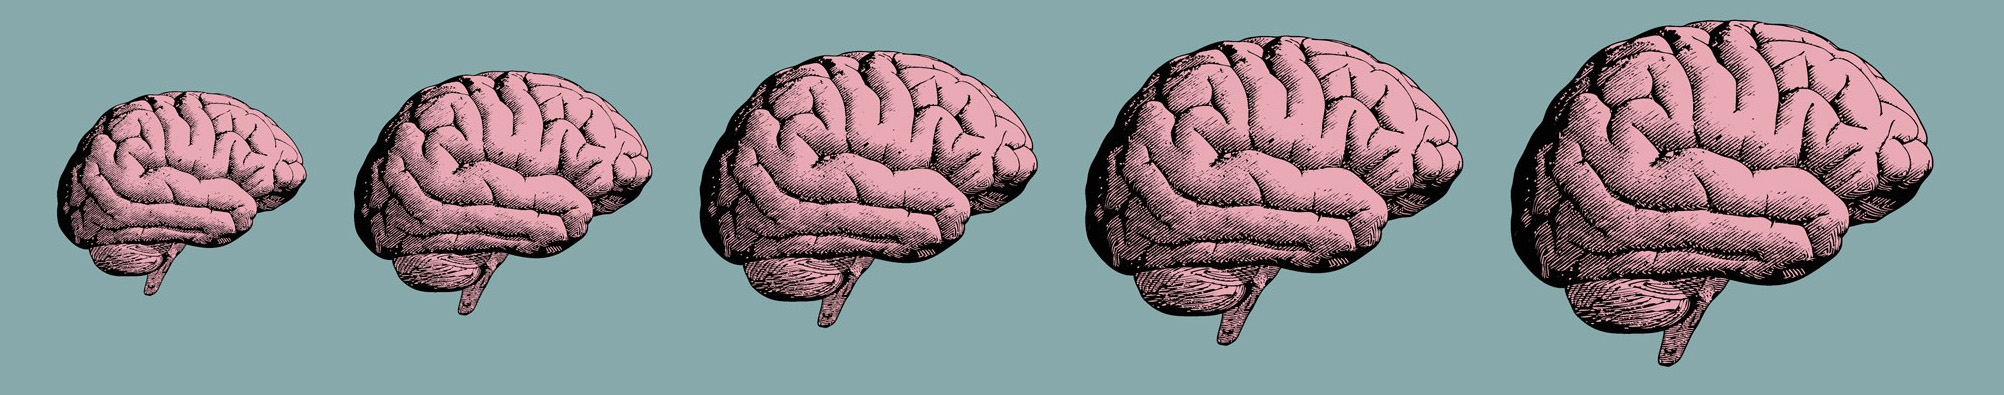 Her İnsan Beyninde Bulunan Gerçek Süper Güç: Nöroplastisite